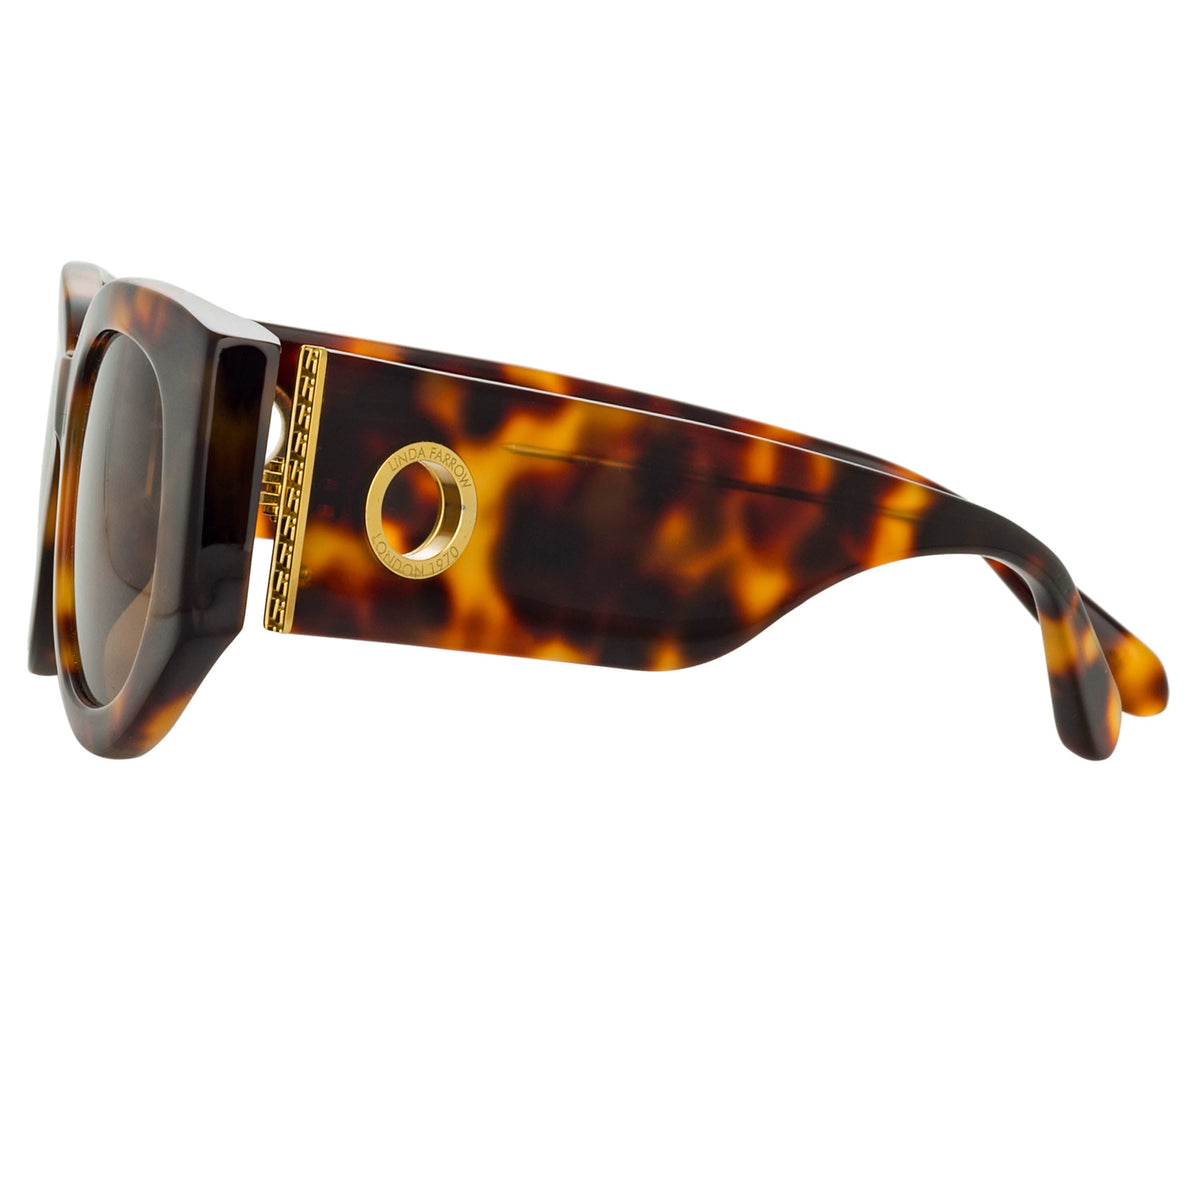 Empire D-Frame Sunglasses in Tortoiseshell frame by LINDA FARROW